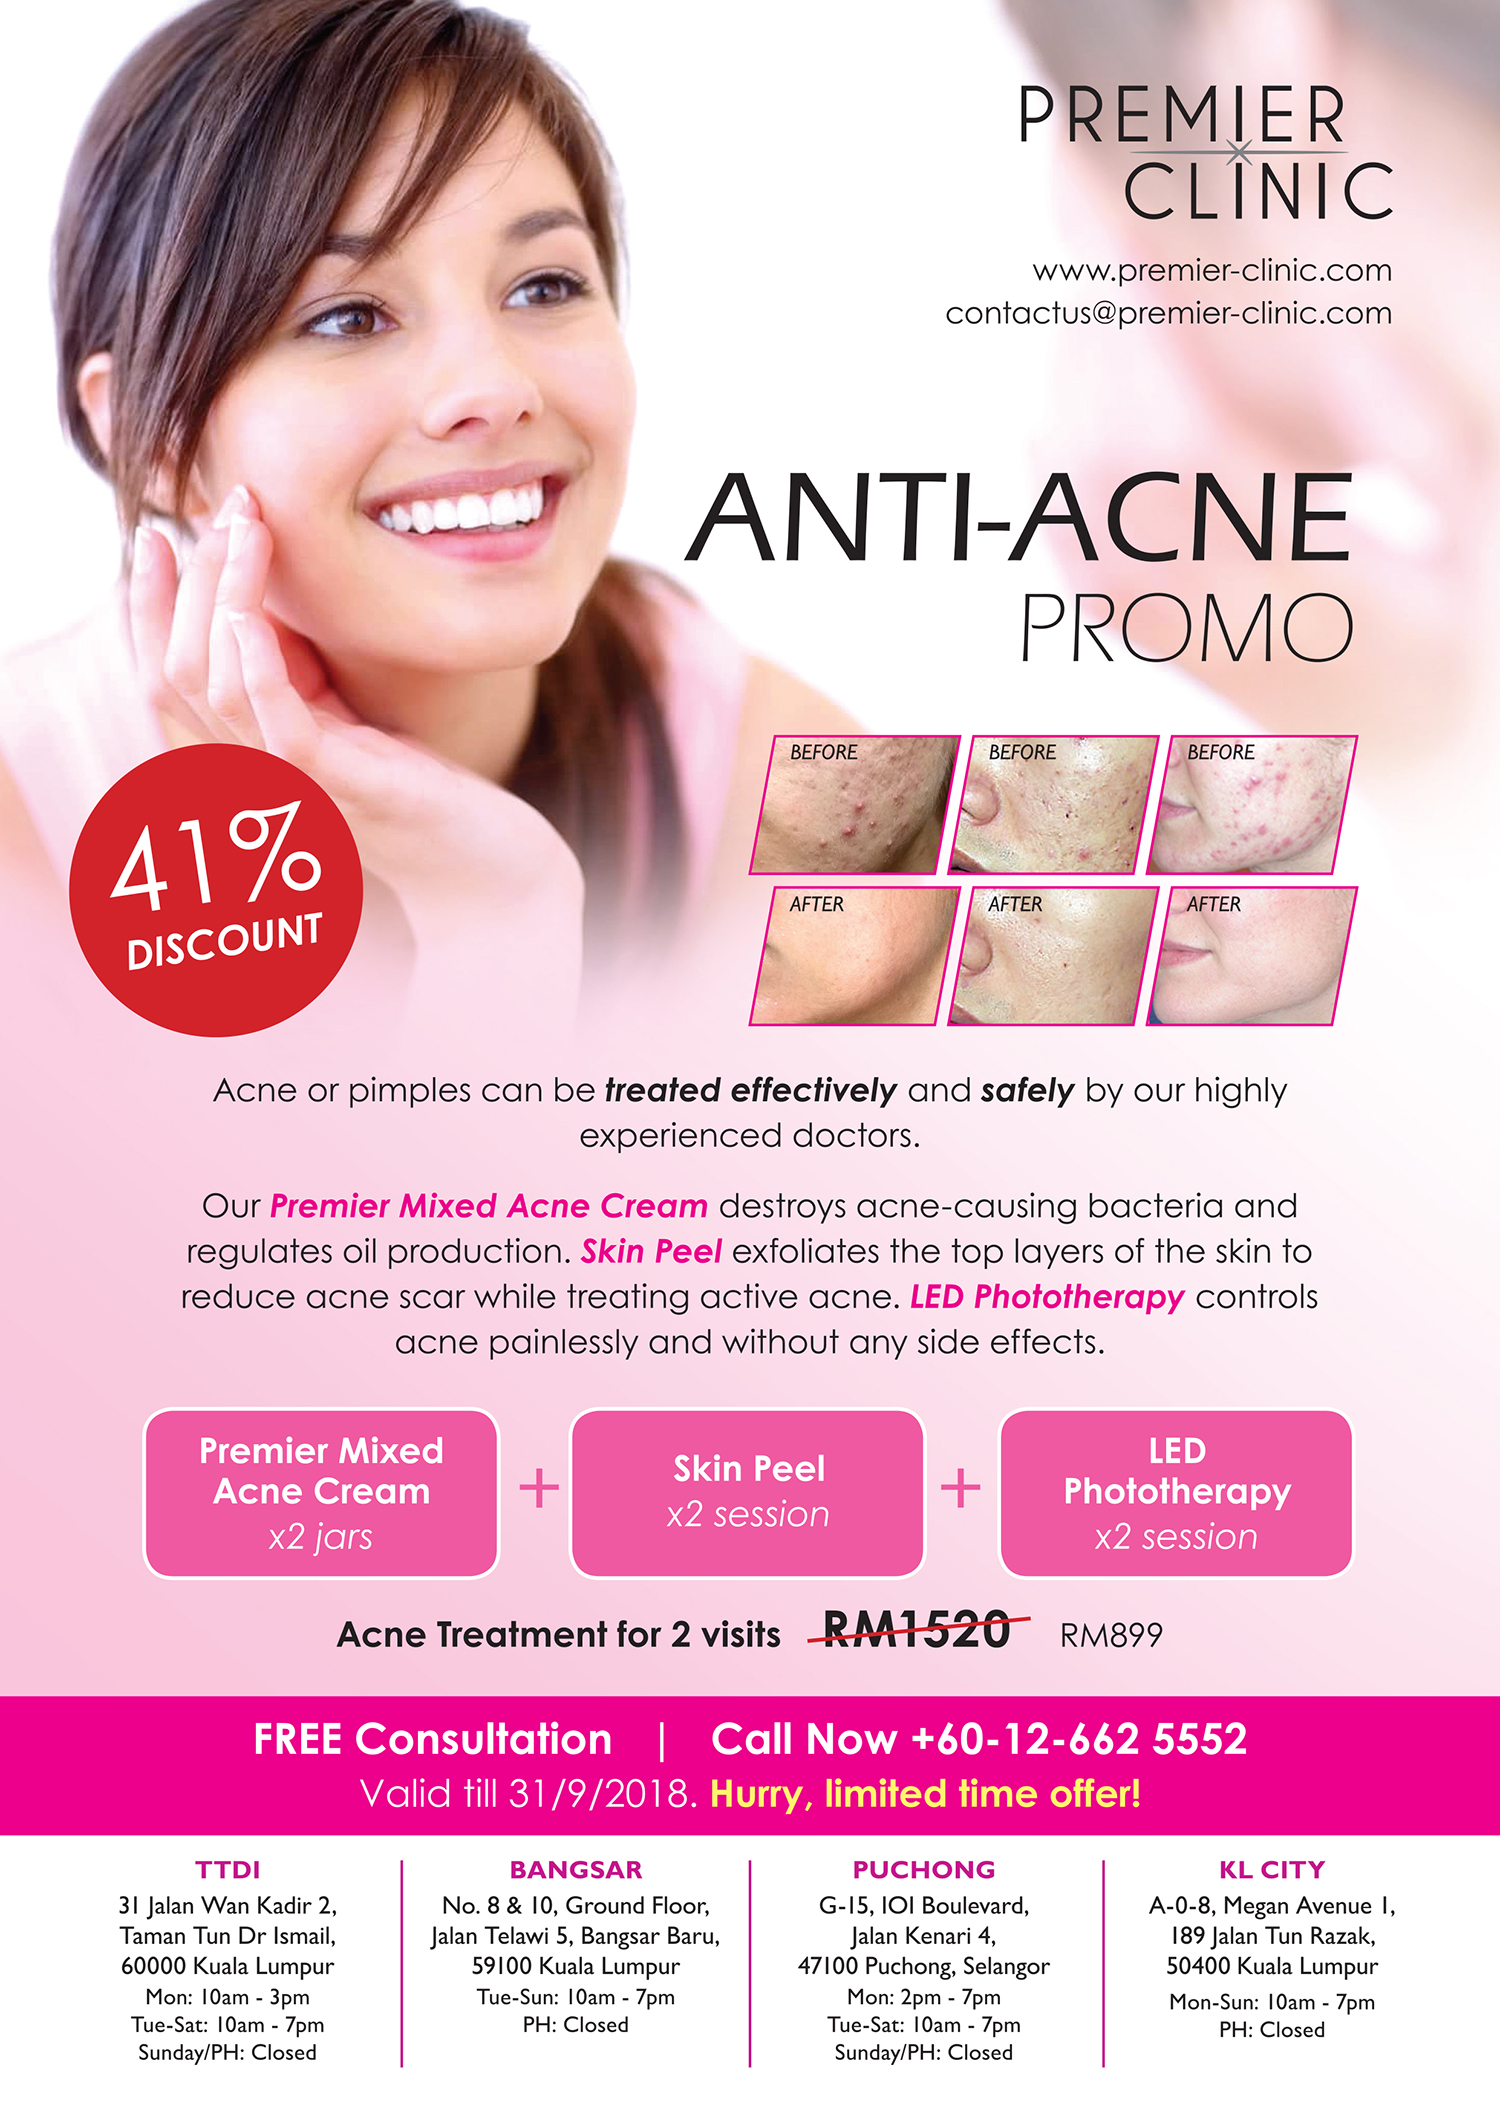 Anti Acne Promo Premier Clinic